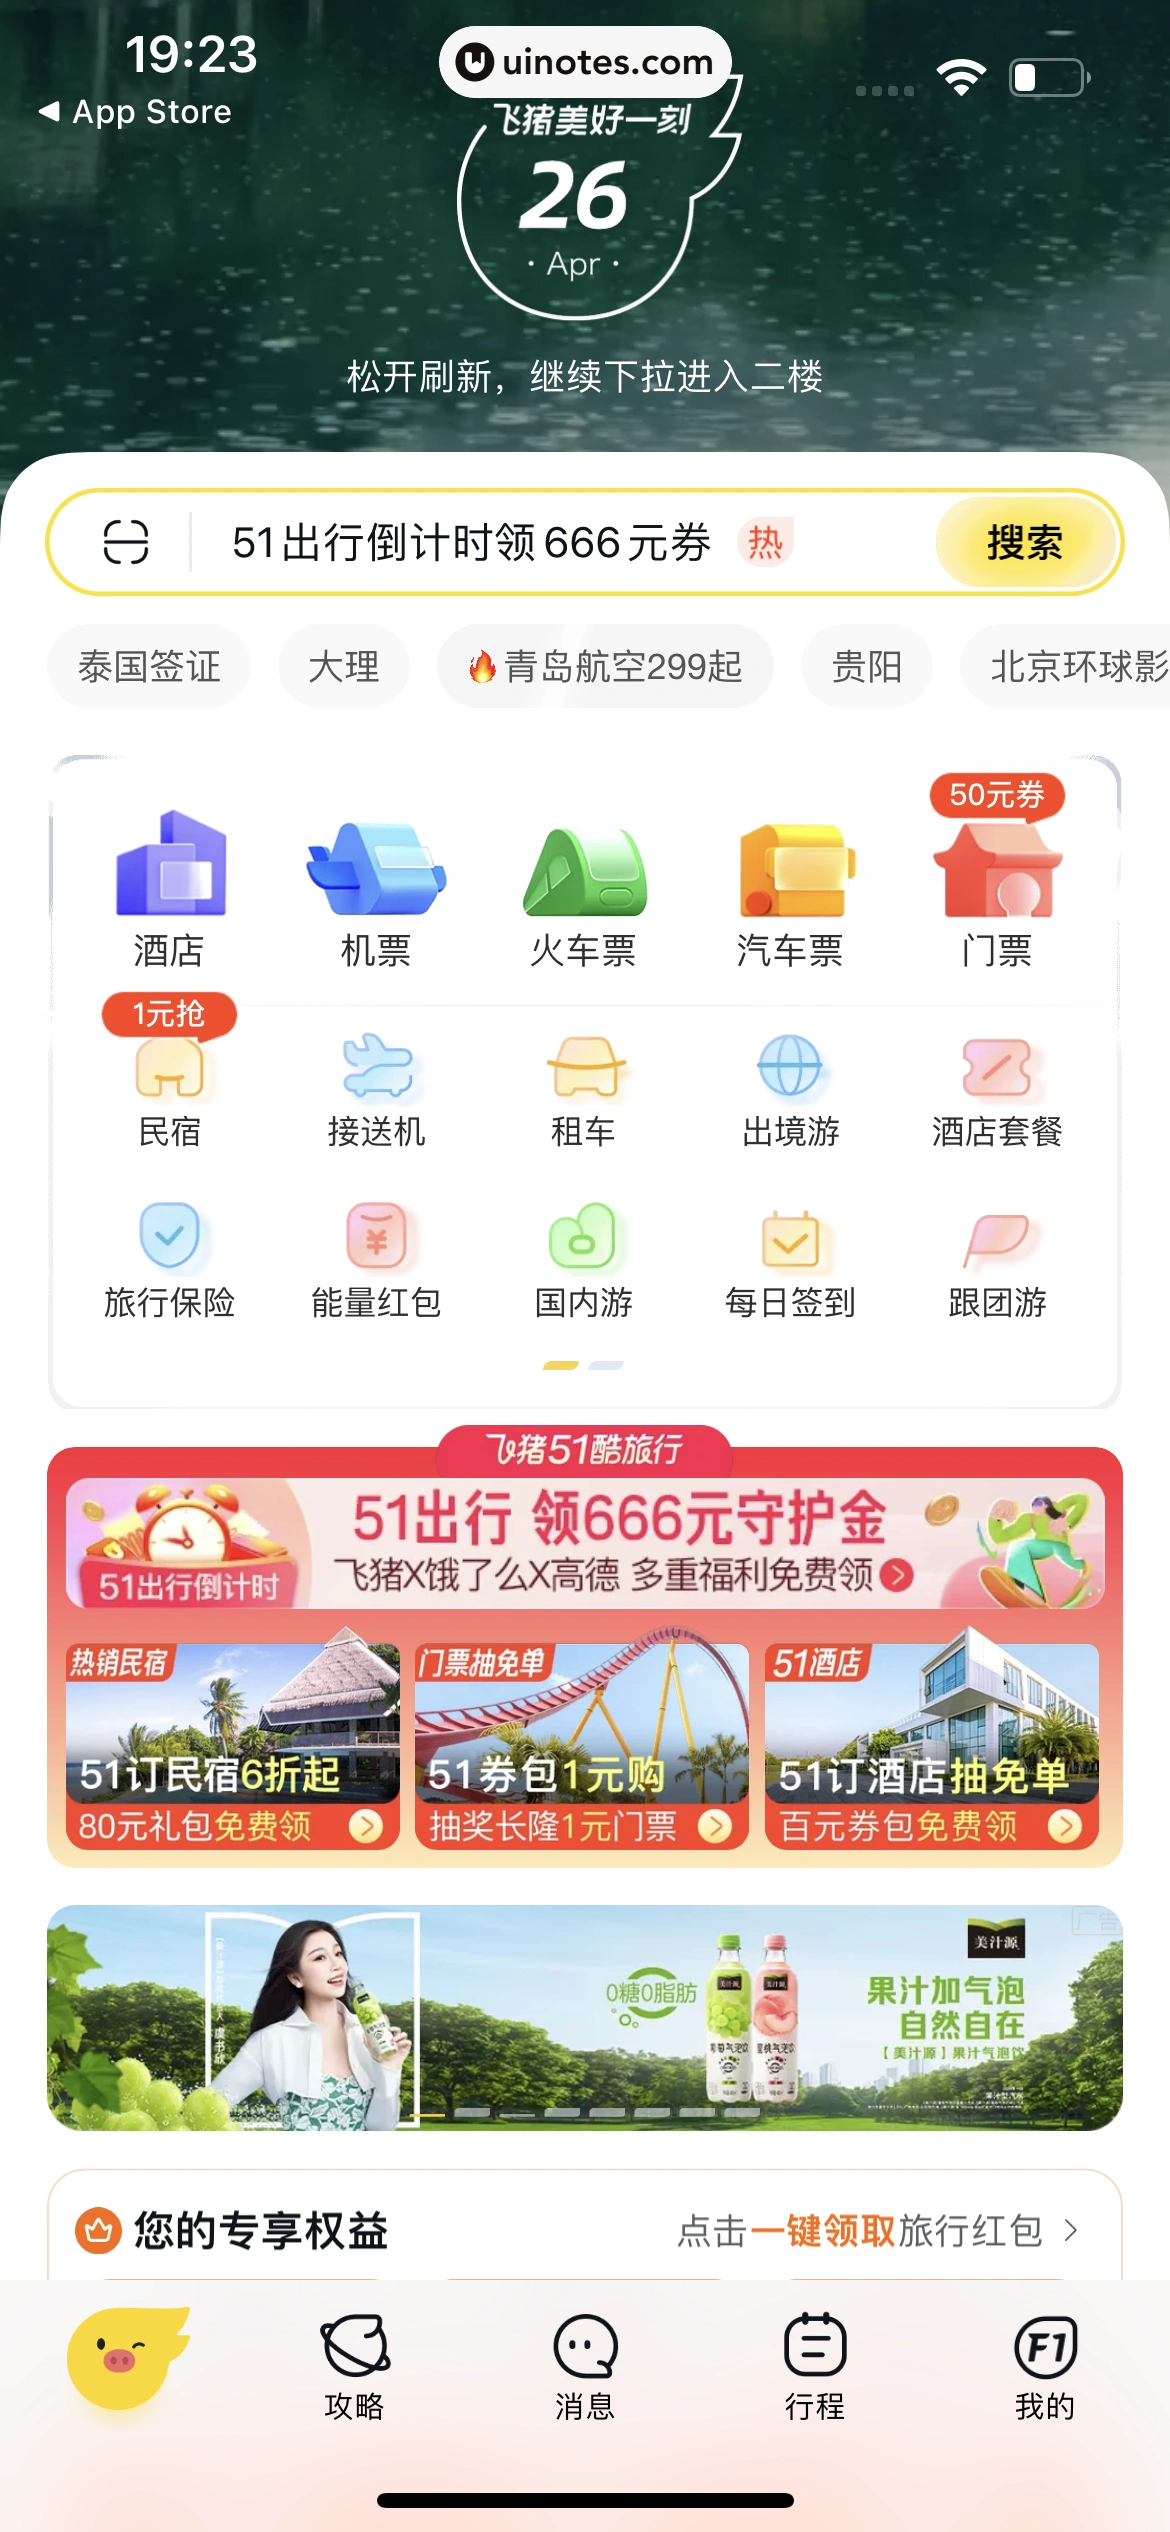 飞猪旅行 App 截图 041 - UI Notes